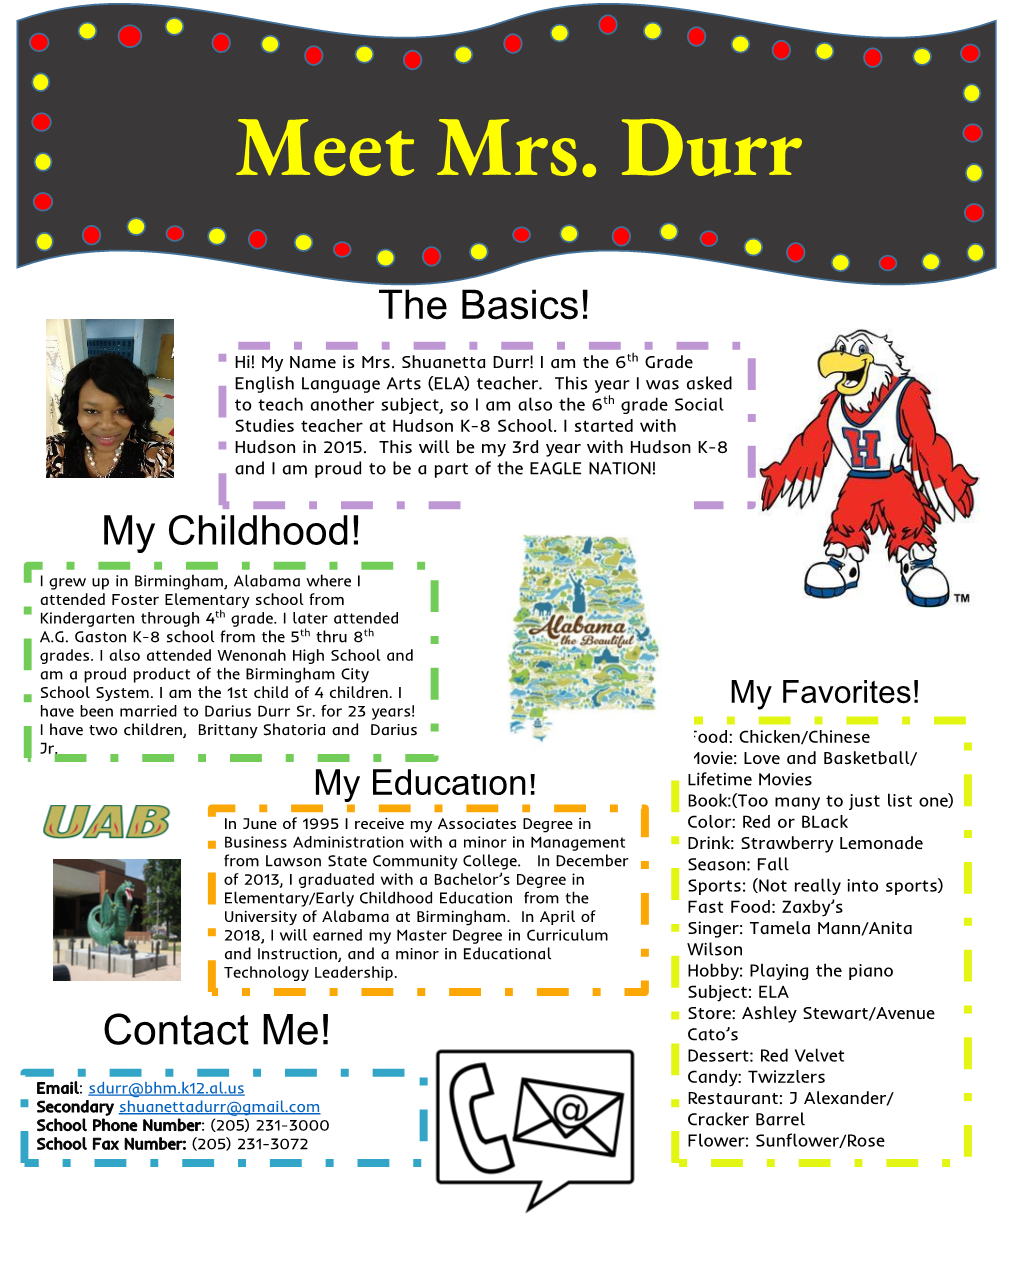 Meet Mrs. Durr